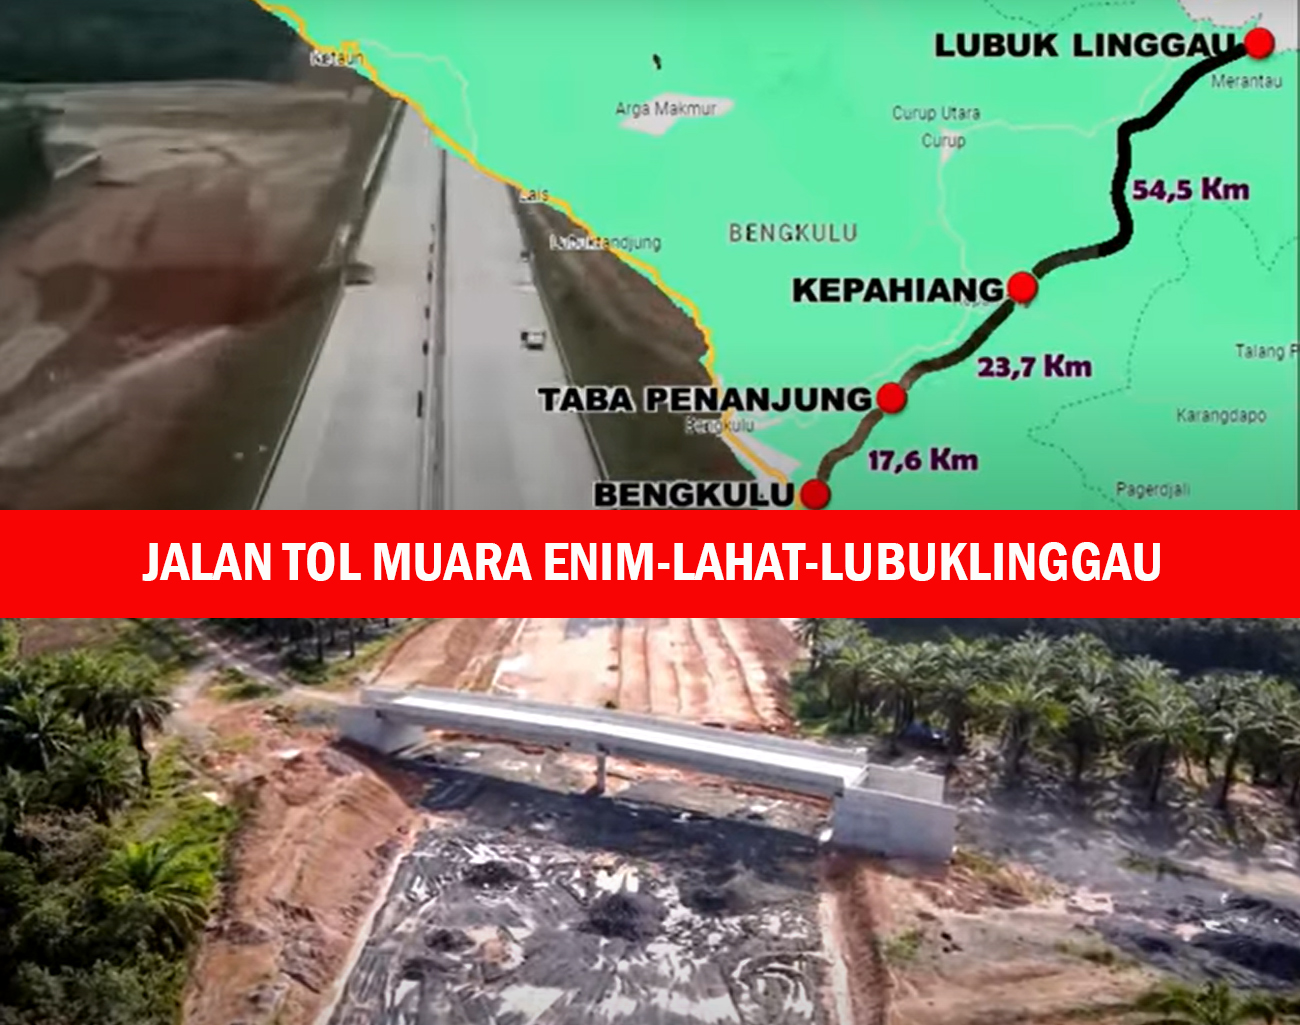 Perkembangan Jalan Tol Muara Enim-Lahat-Lubuklinggau dari Hutama Karya